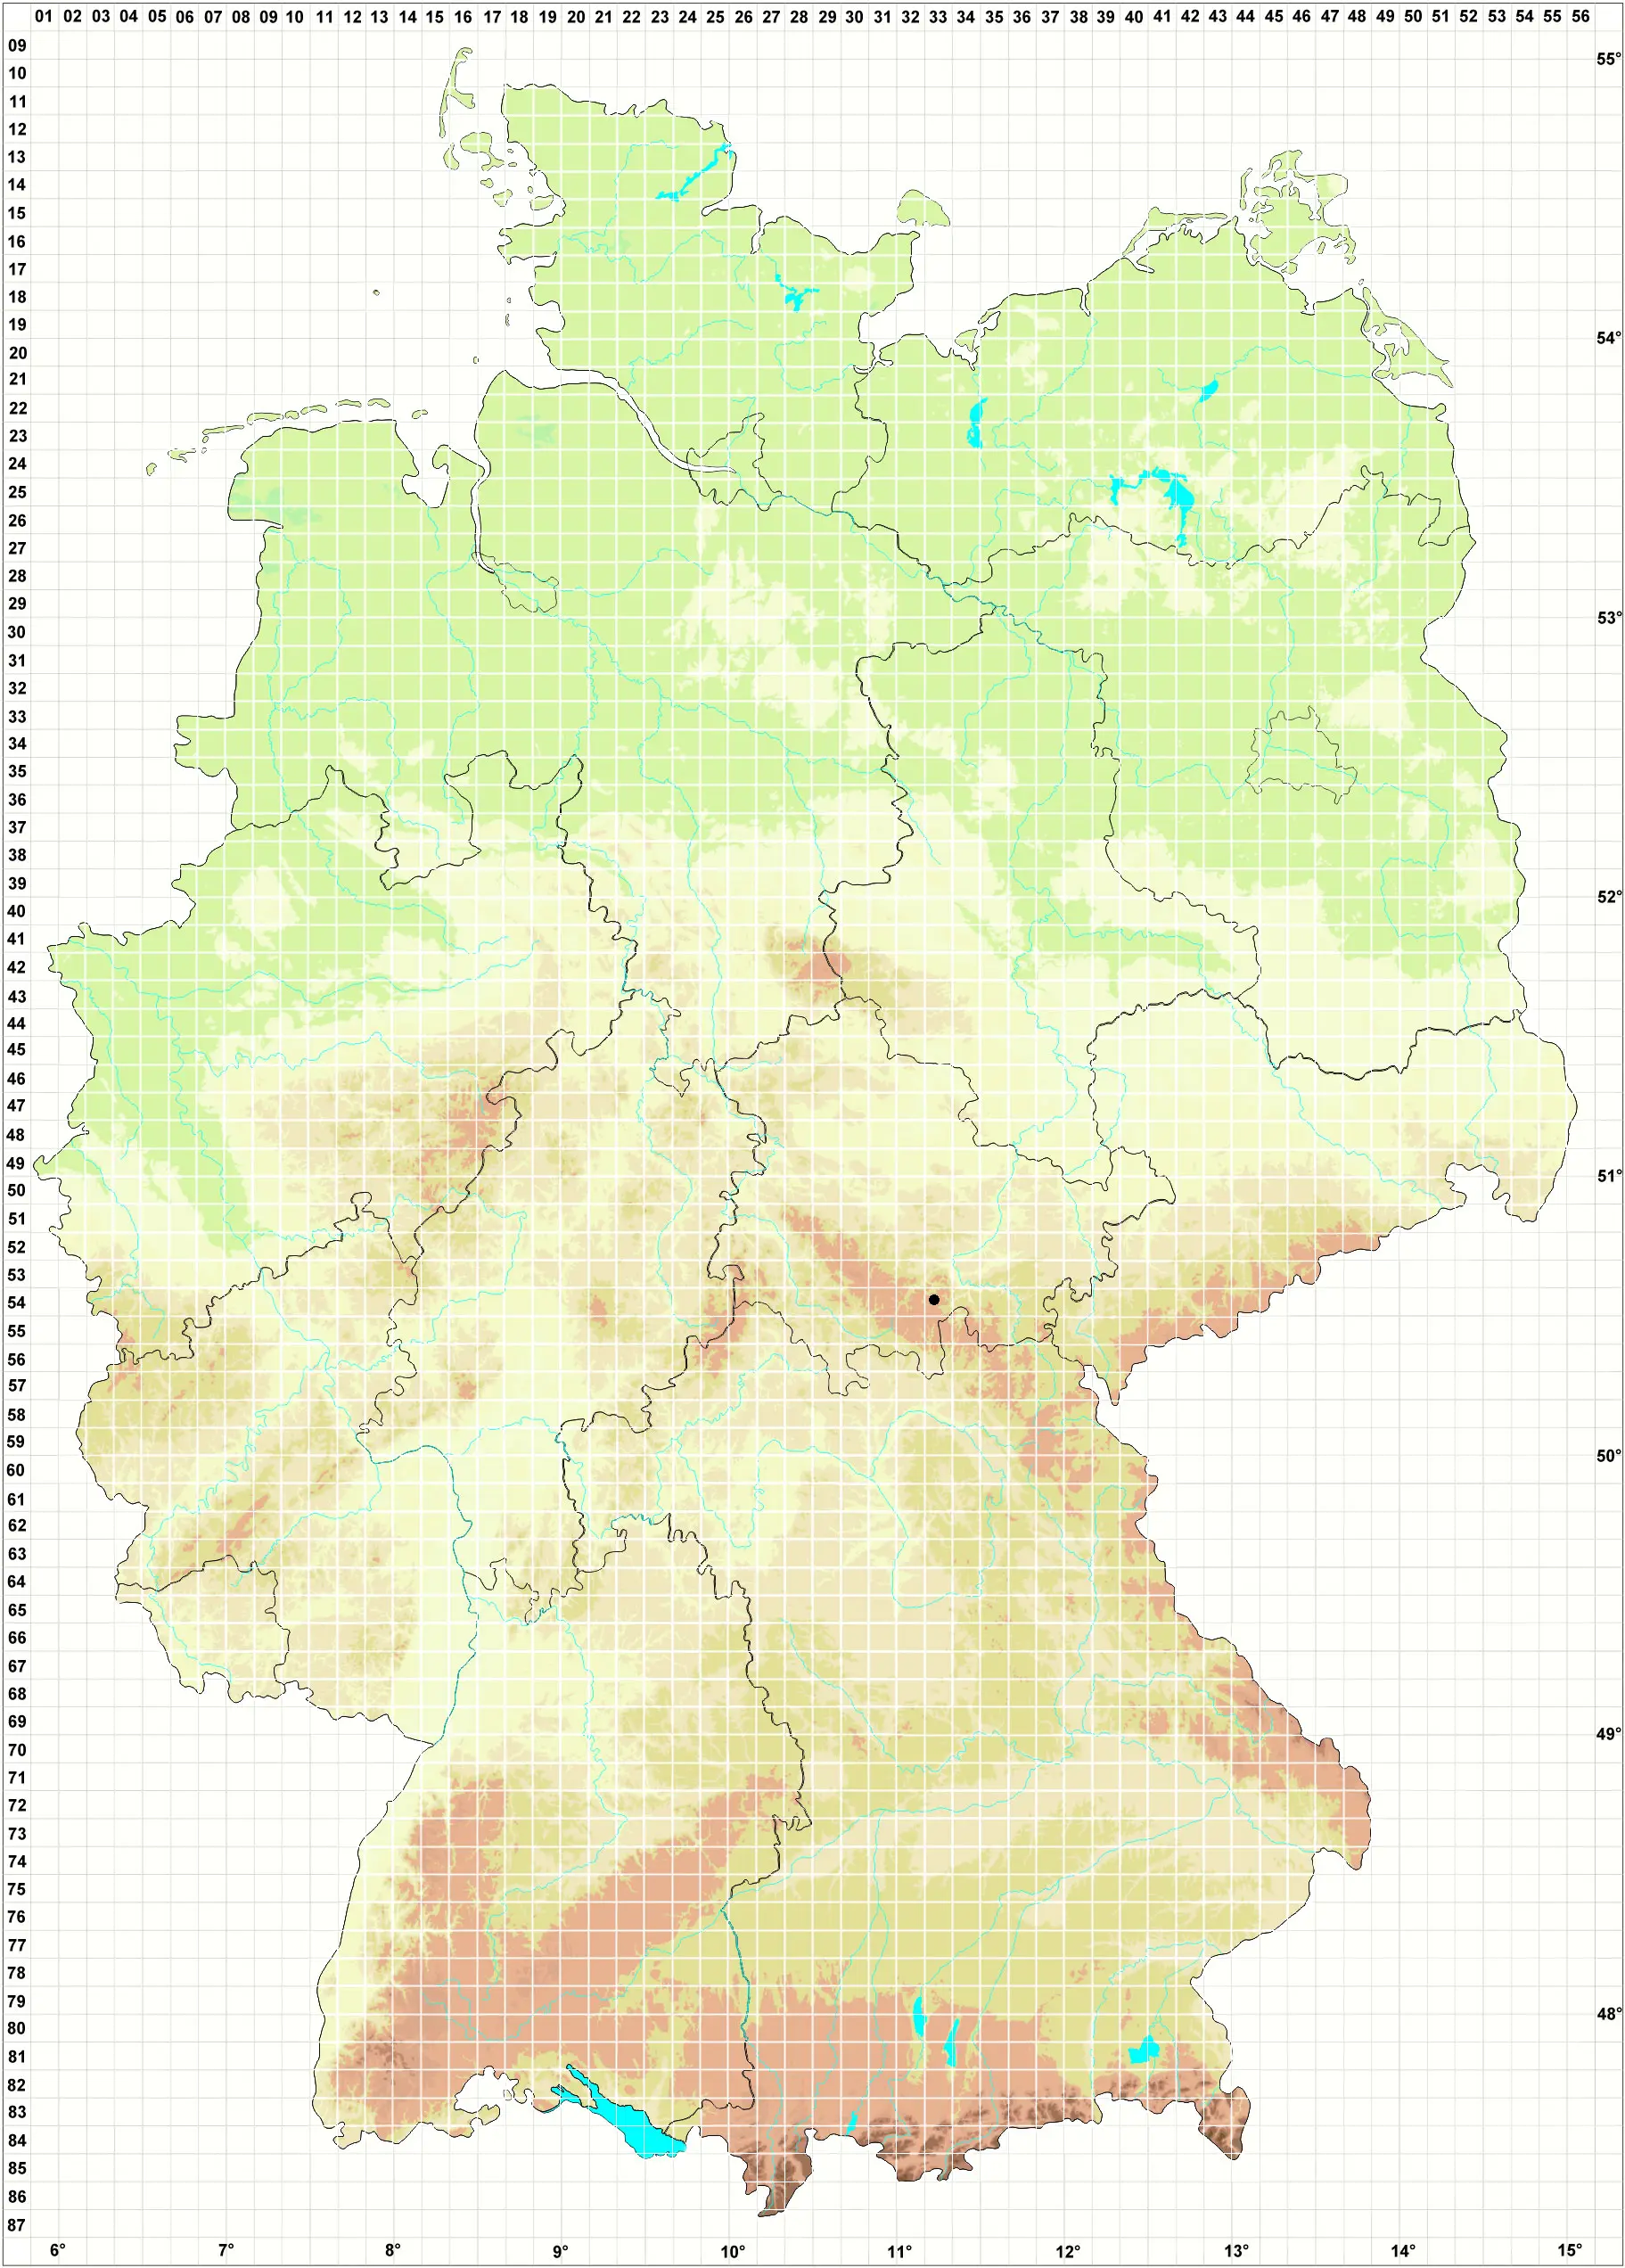 Karte H. Grünberg, J. Eckstein, M. Preußing, L. Meinunger, M. Gliem, A. Weigel 08.10.2011